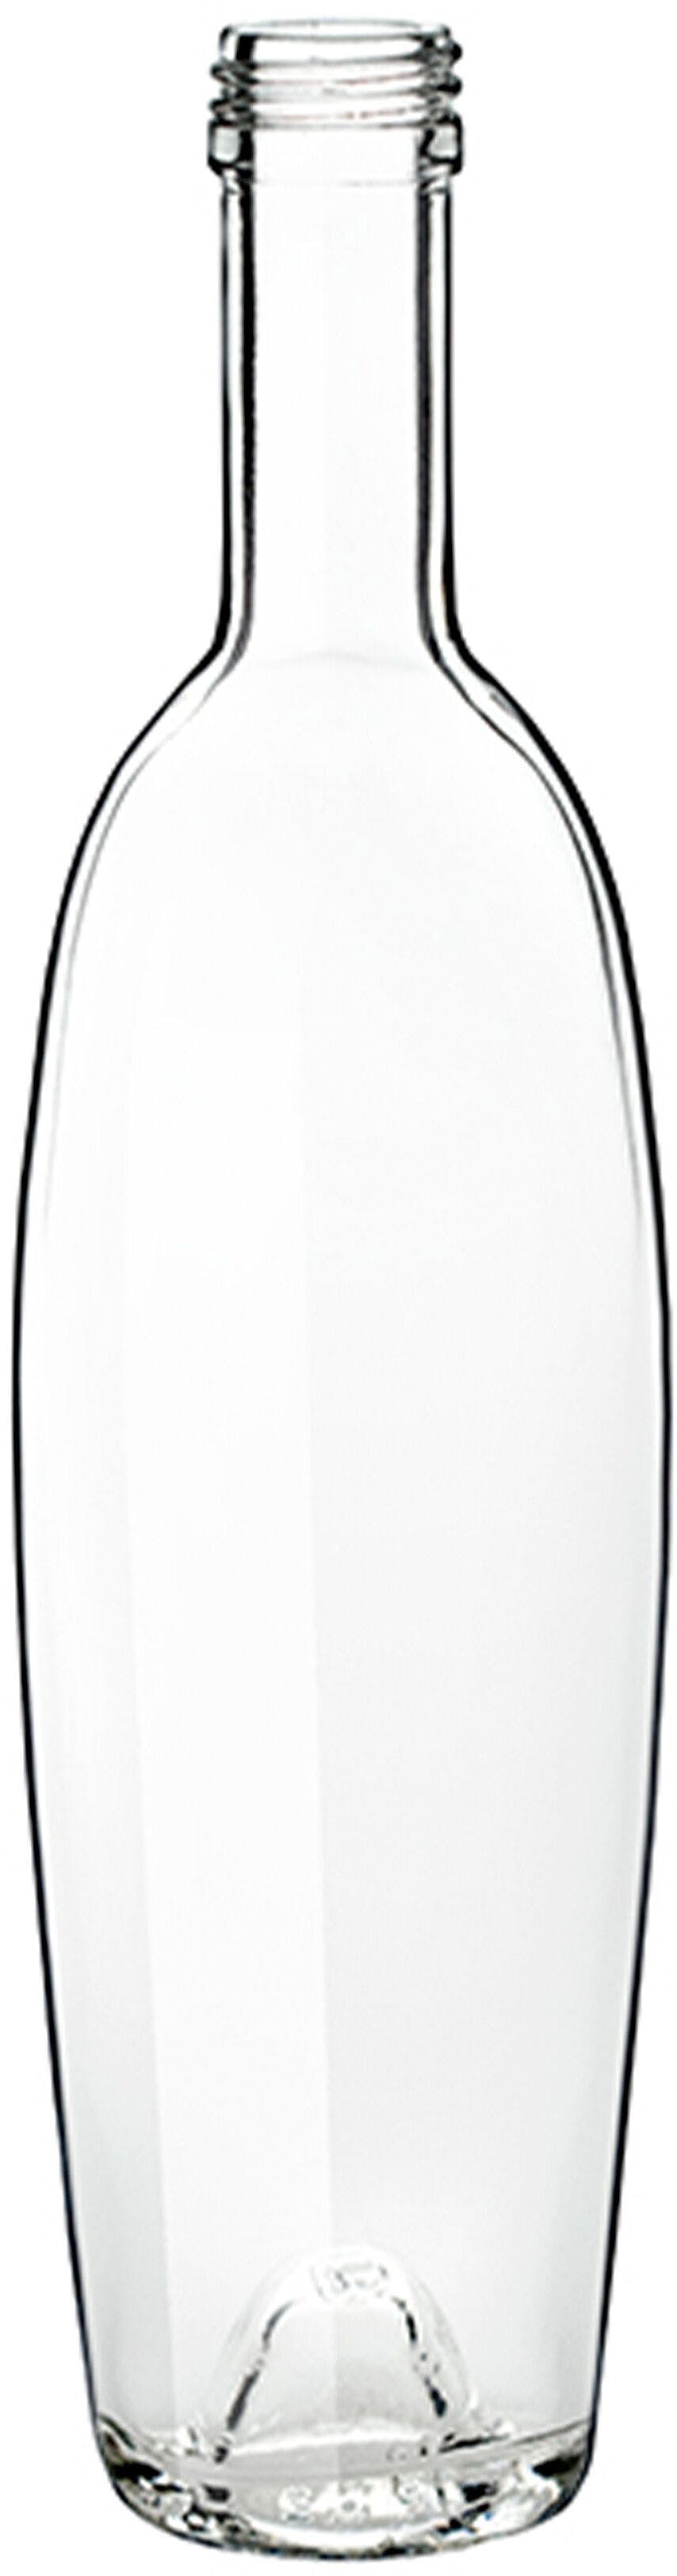 Flasche MODULOR  500 ml BG-Drehverschluss 